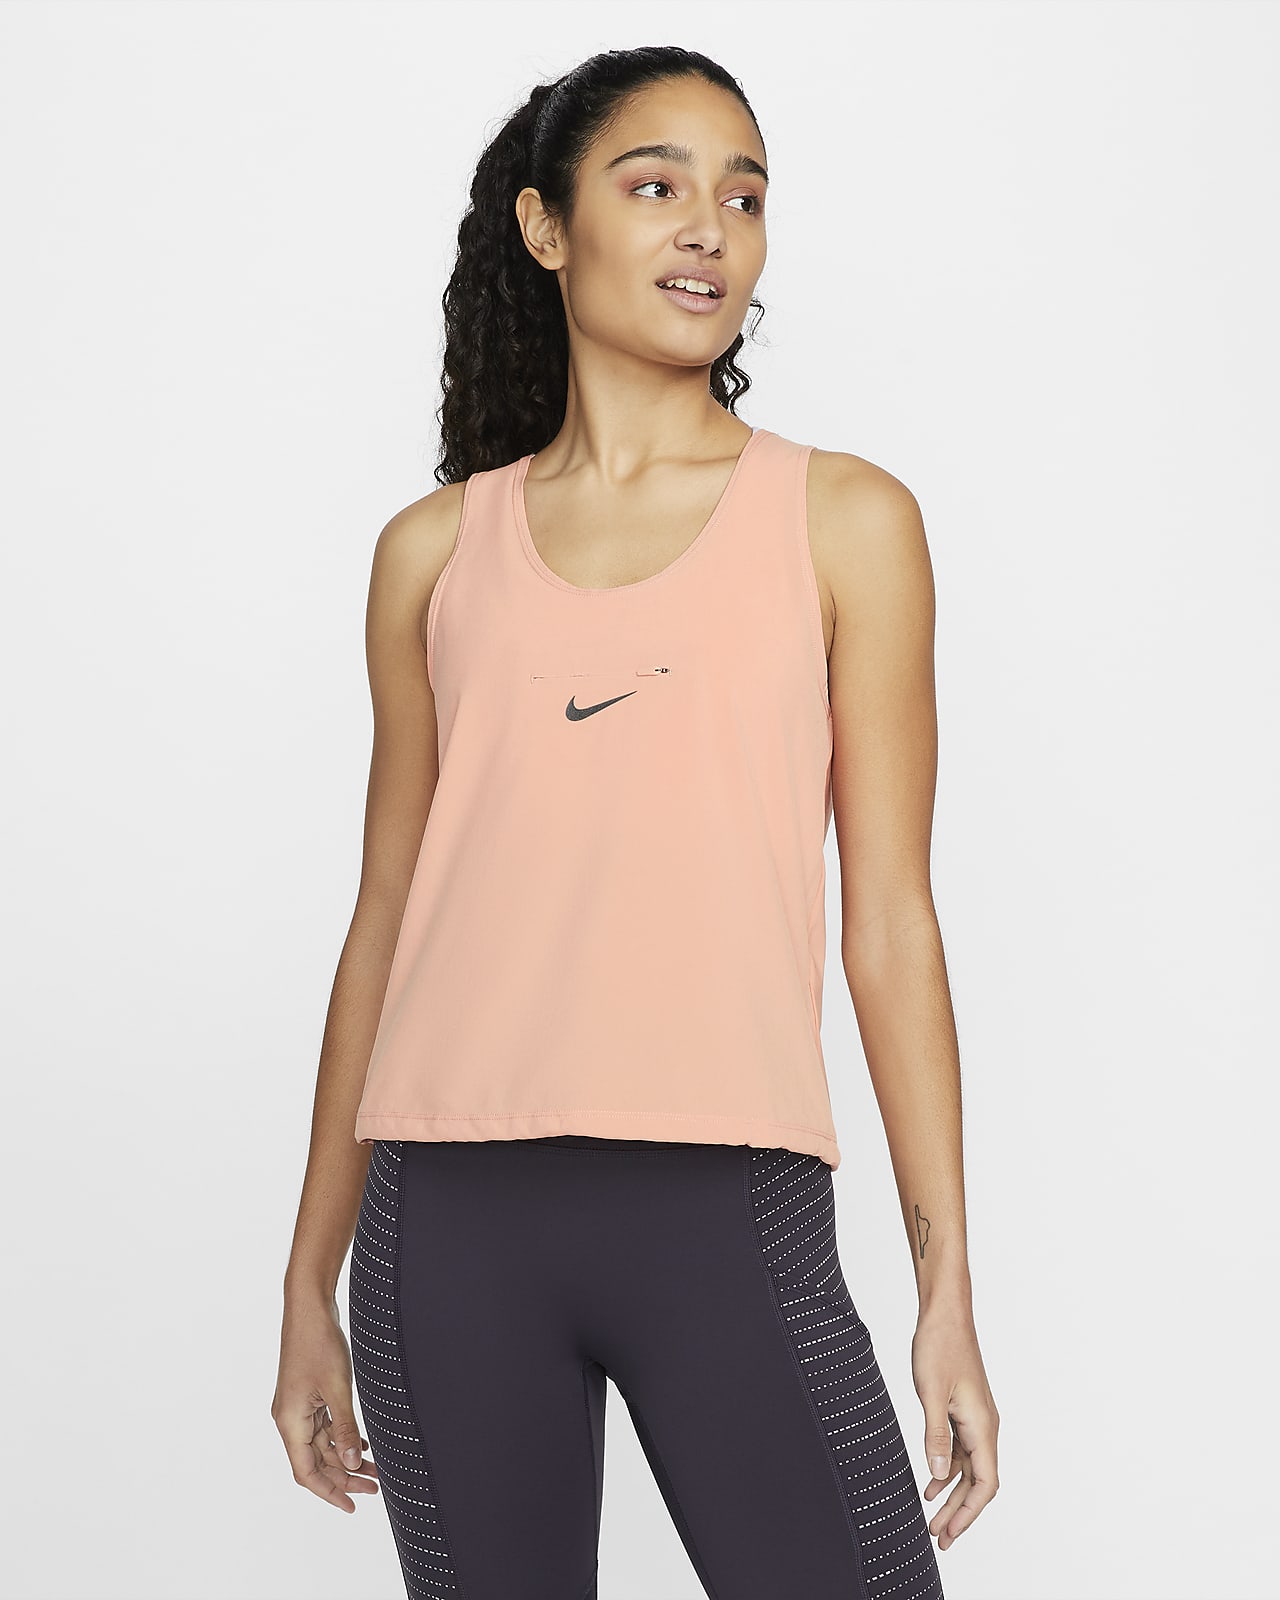 Γυναικείο φανελάκι για τρέξιμο με μετατρέψιμη σχεδίαση Nike Dri-FIT Run Division